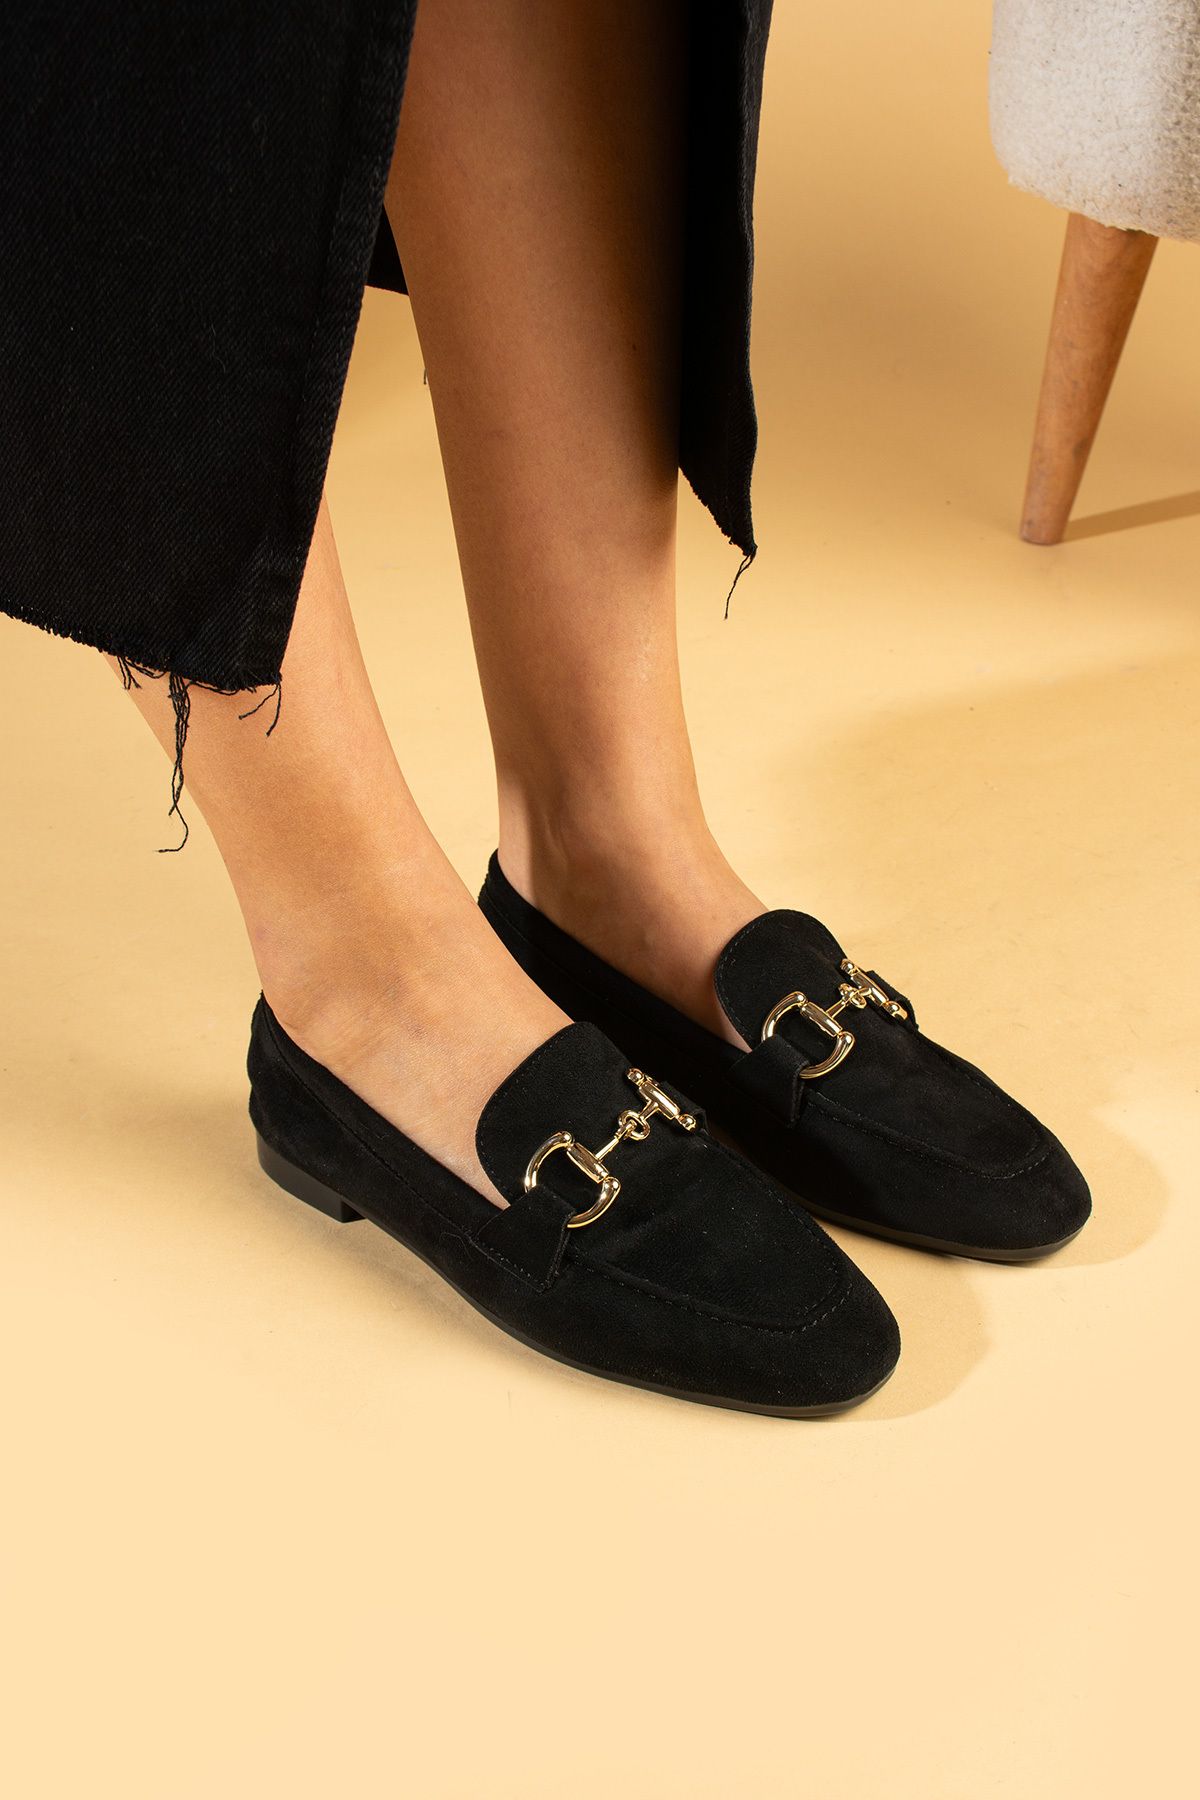 Pembe Potin Kadın Babet Siyah Nubuk Tokalı Hafif Rahat Taban Şık Günlük Ayakkabı